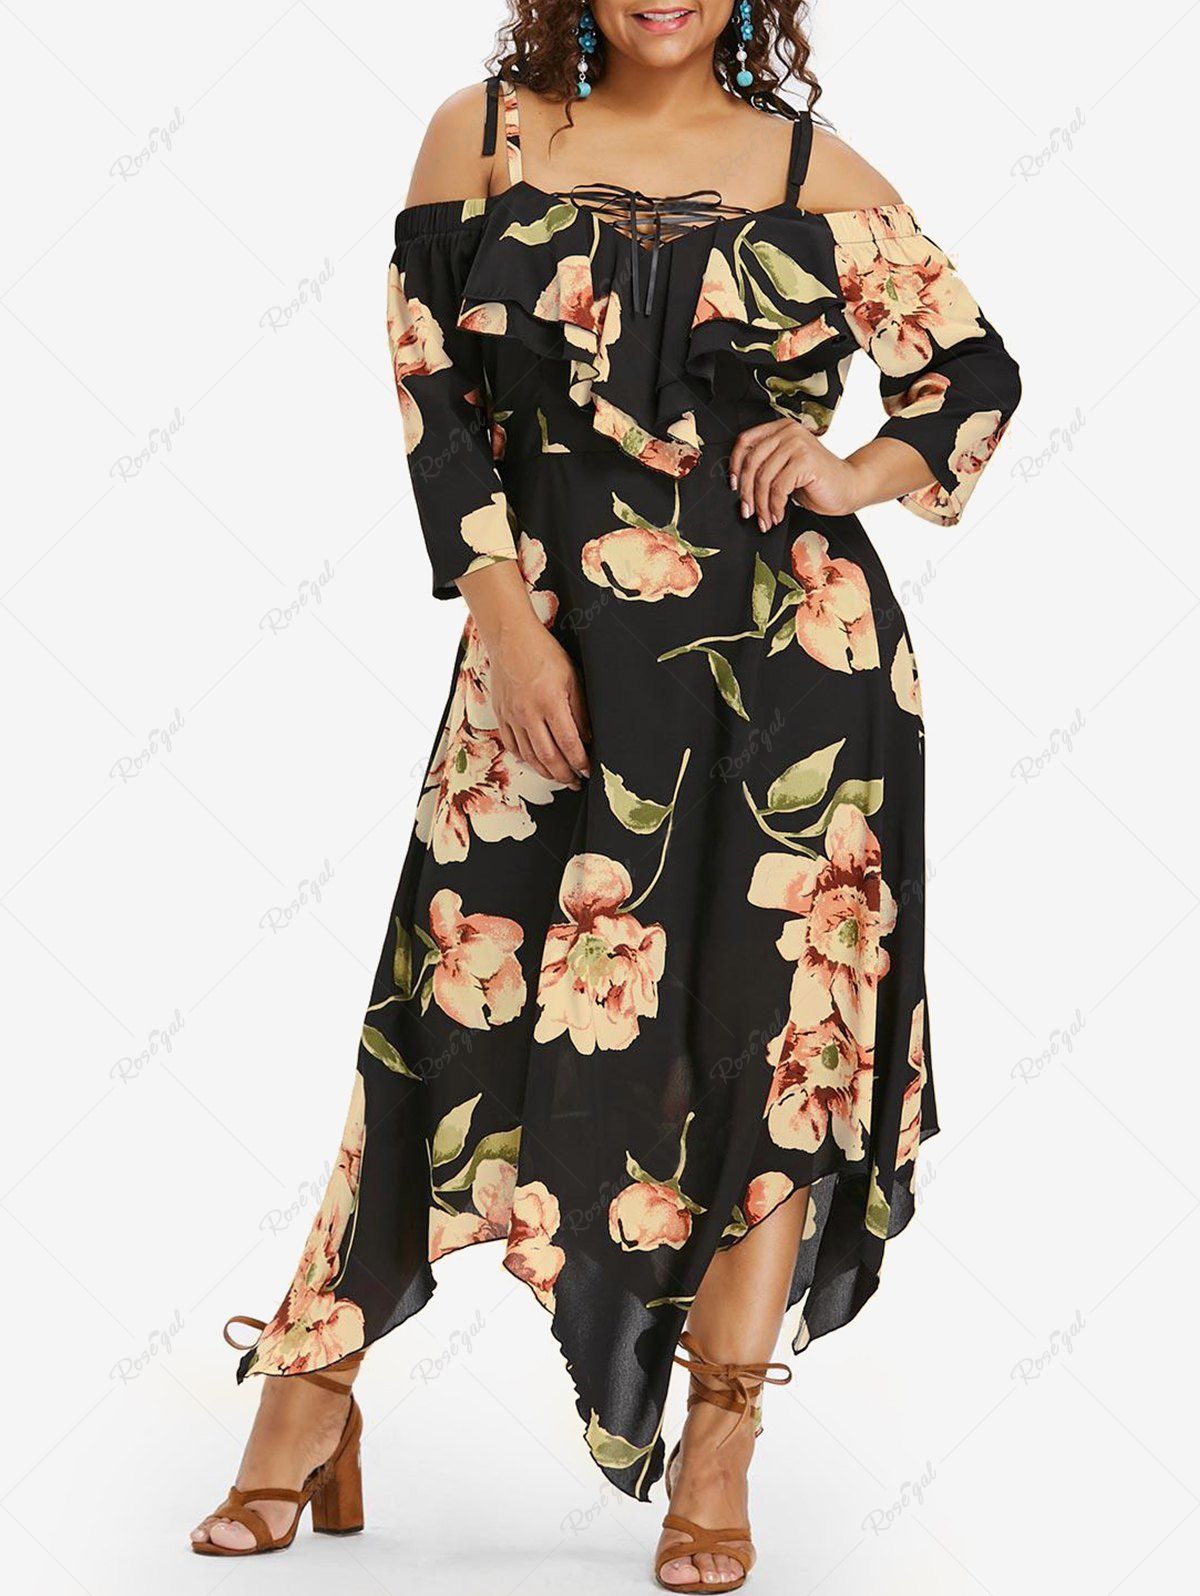 Unique Plus Size Flower Print Lace Up Cold Shoulder Handkerchief Dress  